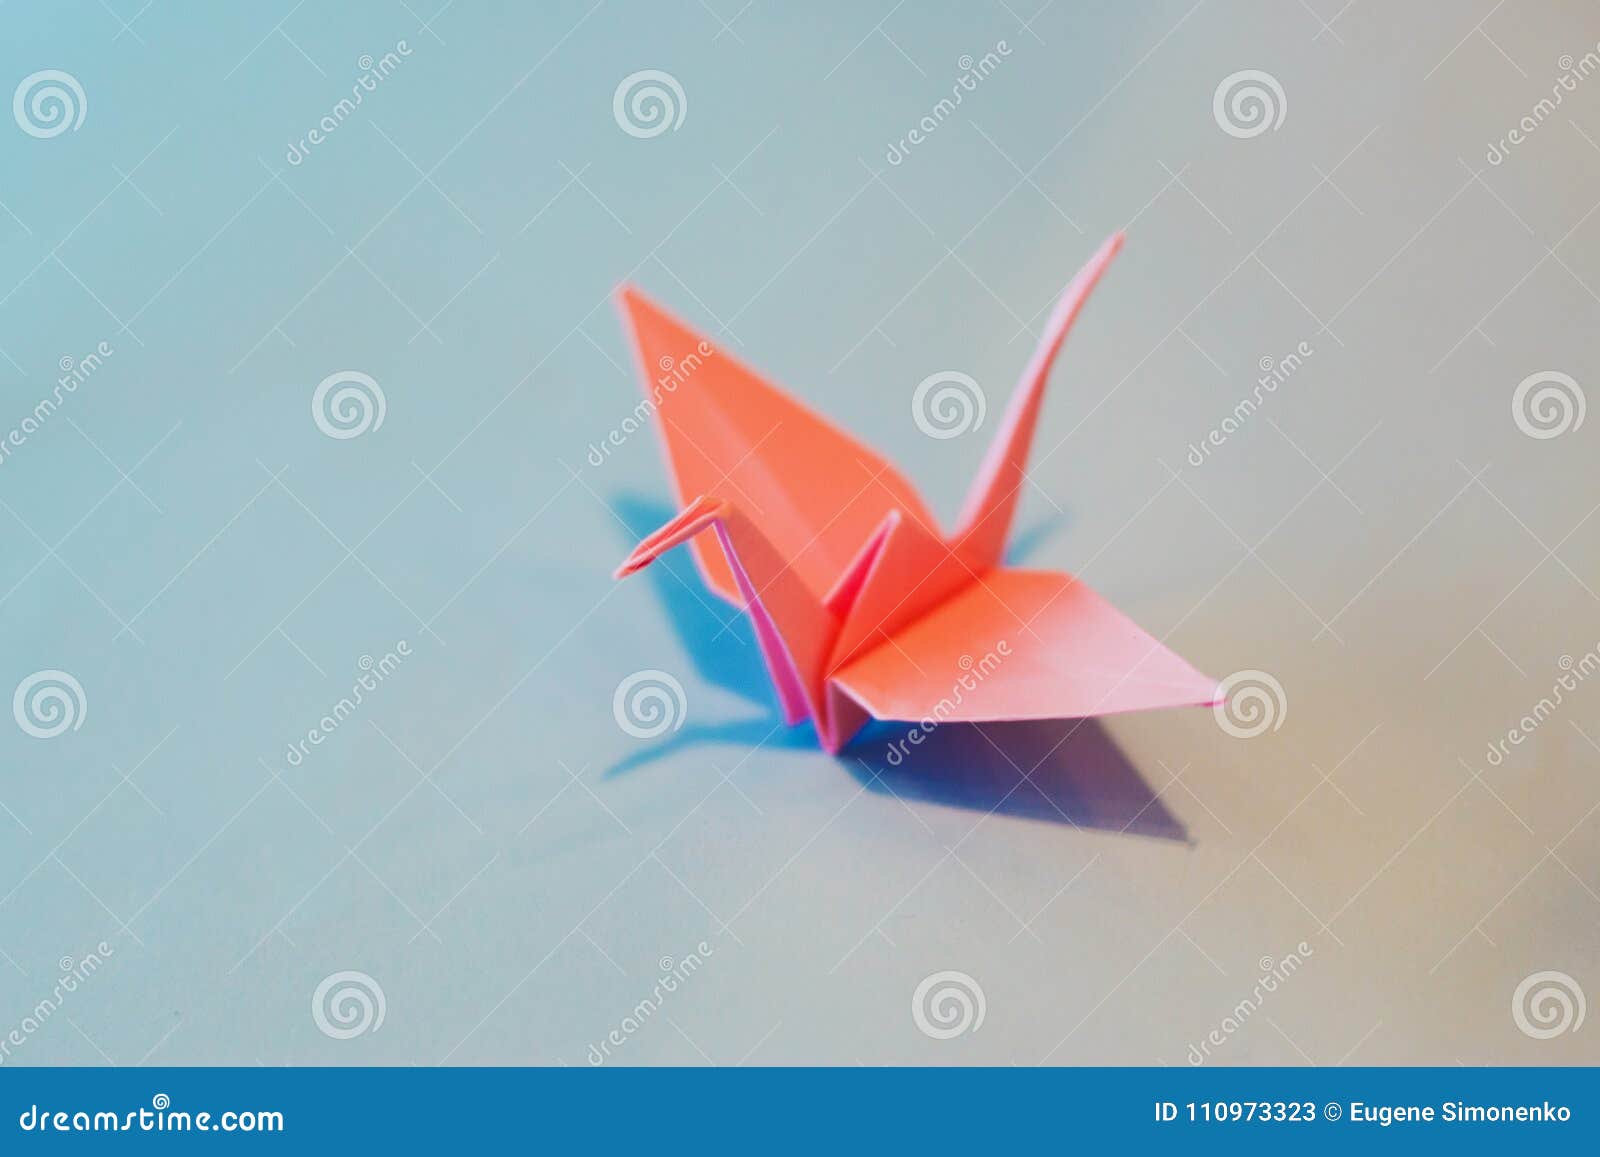 Большая птица оригами резиденция утренней росы. Оригами птичка летающая. Оригами летающий Стриж. Оригами летающие штуки из бумаги. Птички оригами золотой миг.